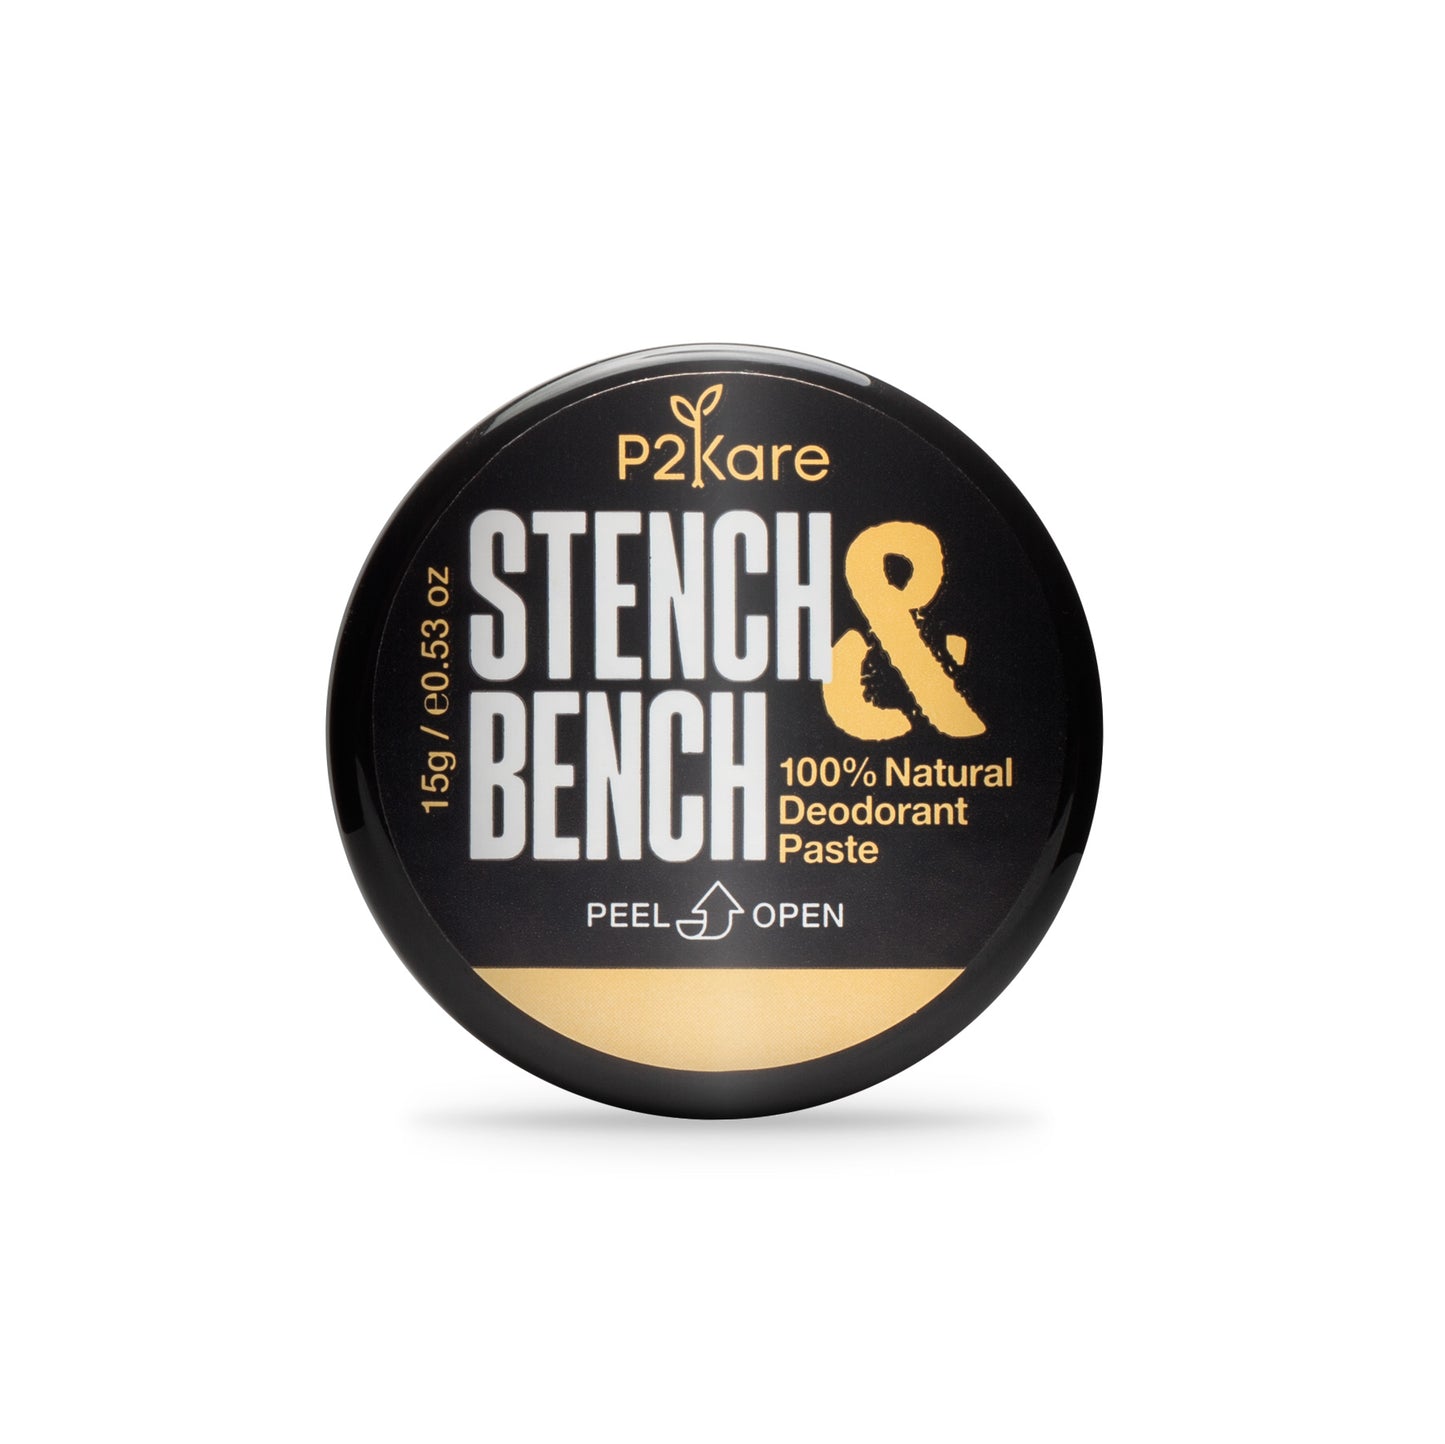 STENCH & BENCH